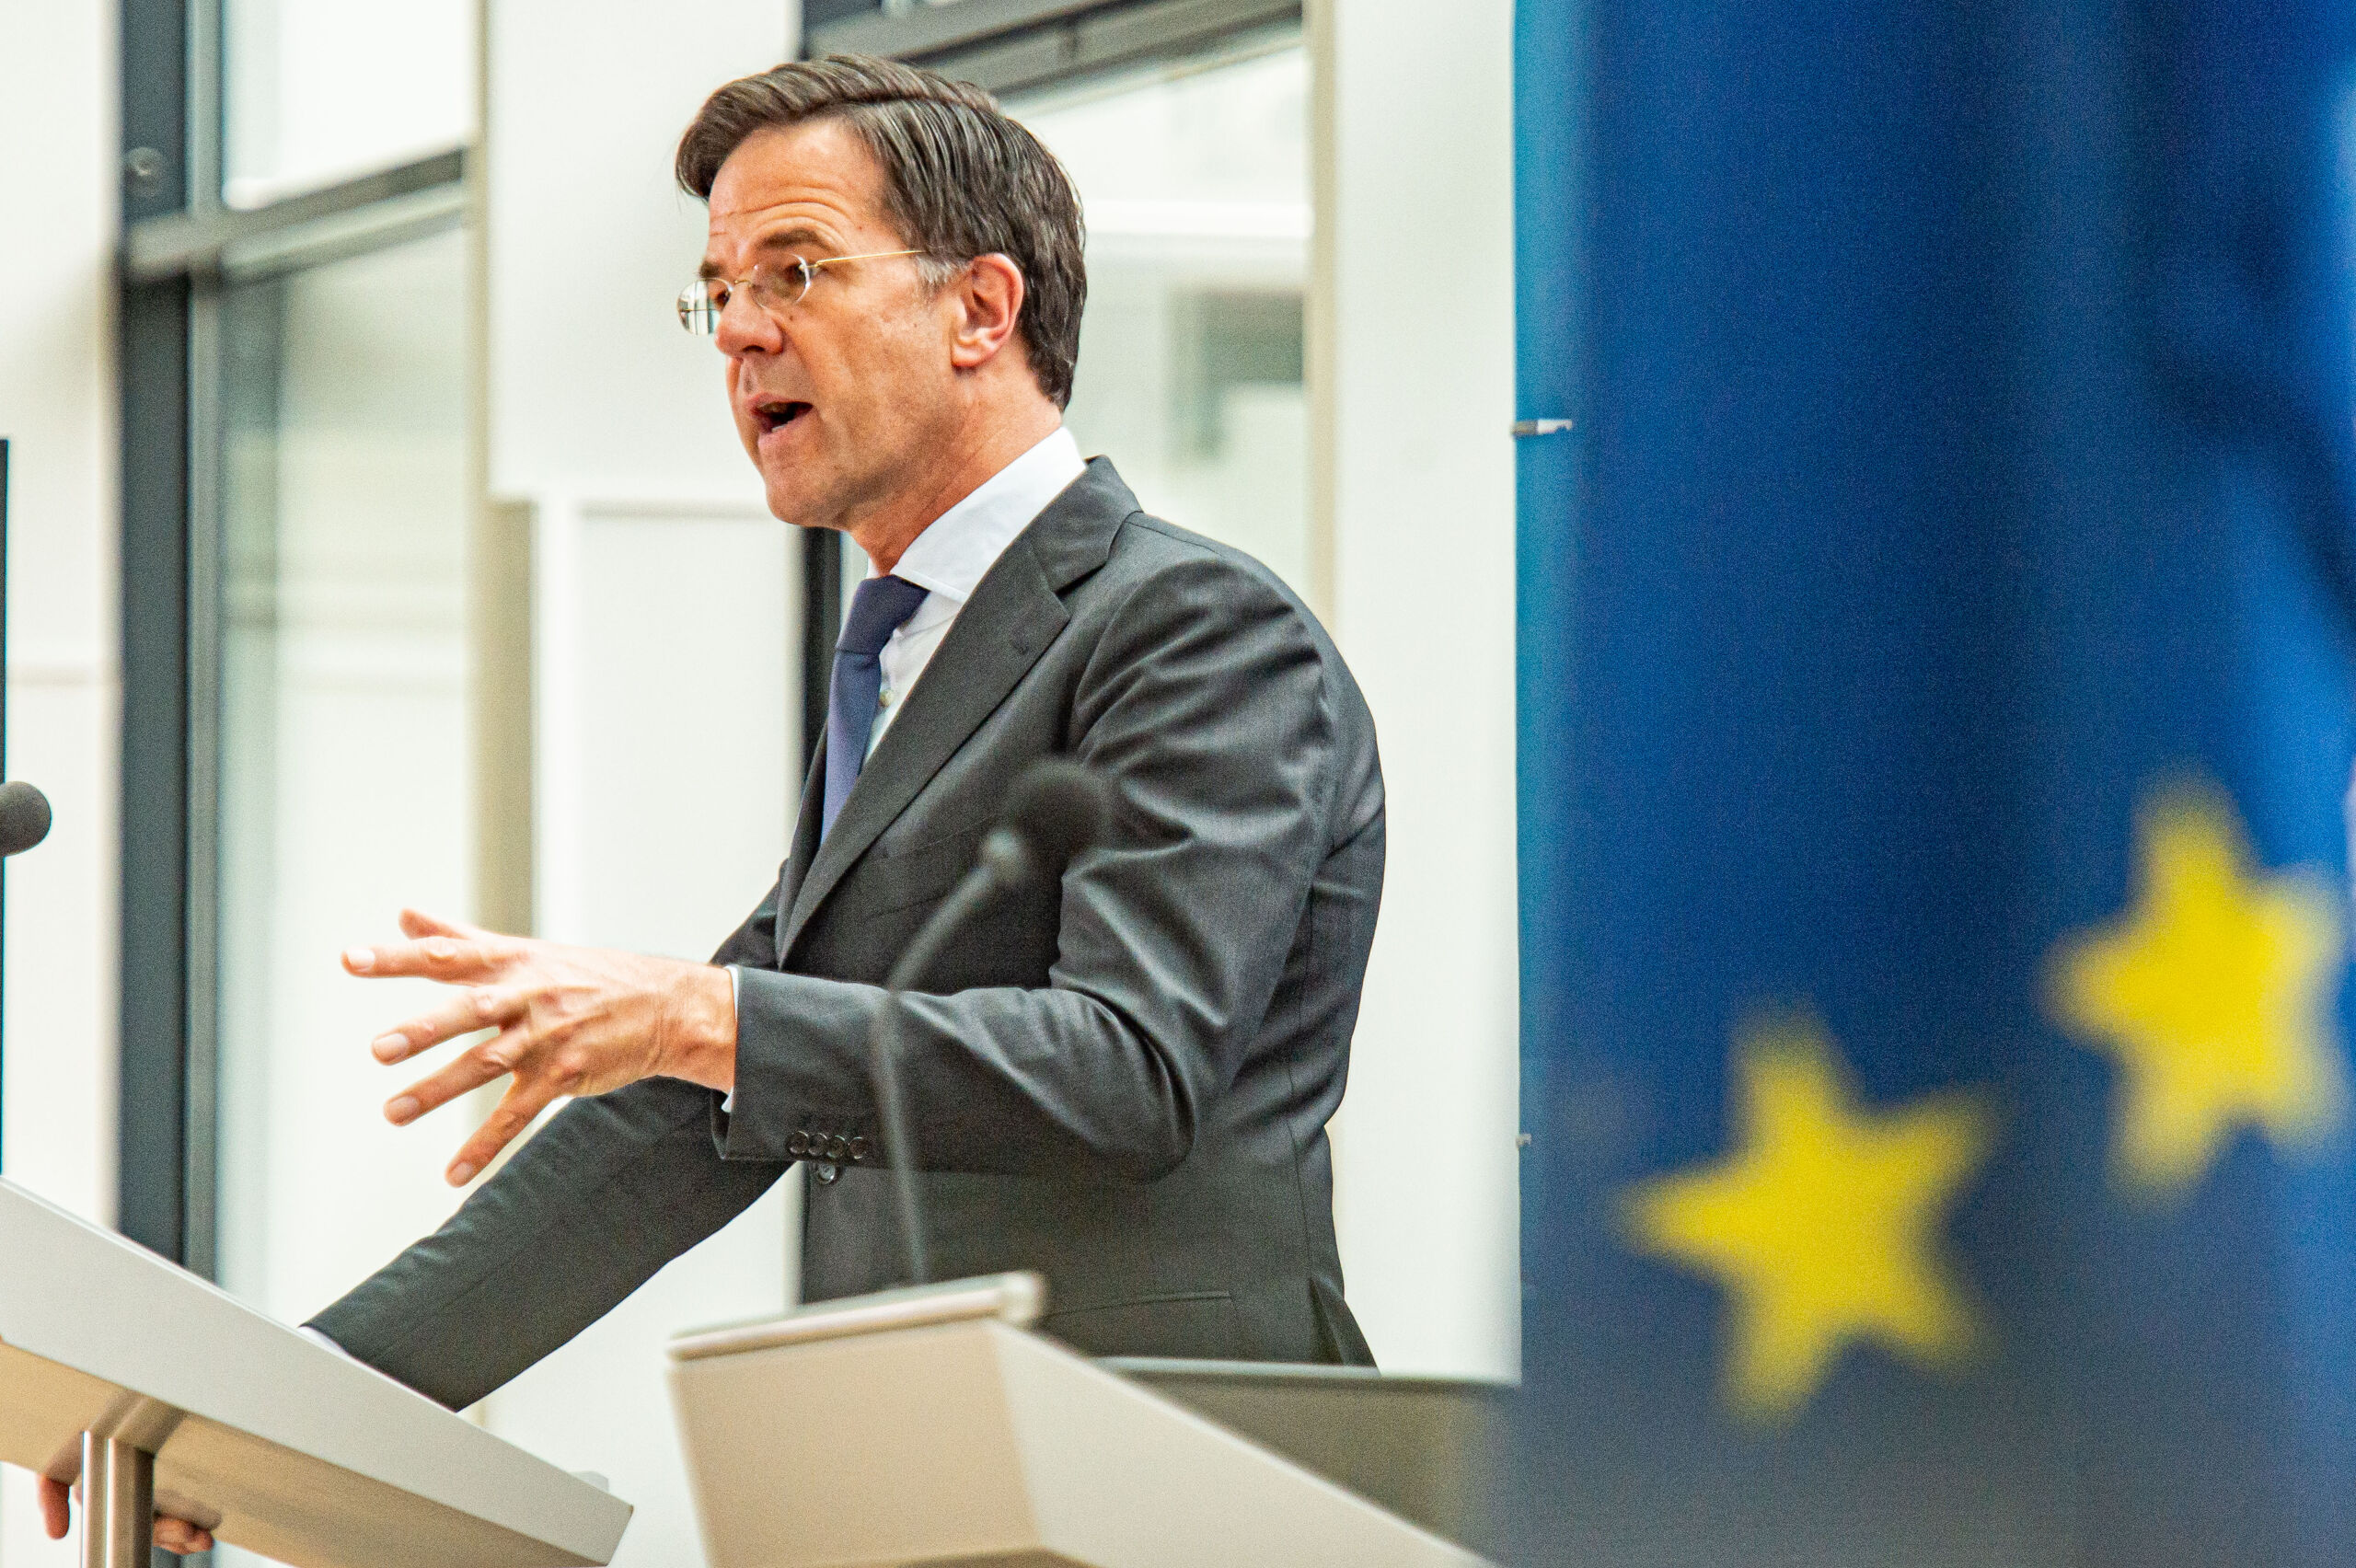 BRUSSEL - Demissionair minister-president Mark Rutte tijdens een persmoment na afloop van de EU-top. Leiders van de EU-landen komen bijeen om onder meer te praten over de coronacrisis, de digitale transformatie, de energieprijzen, migratie en externe betrekkingen. ANP JONAS ROOSENS